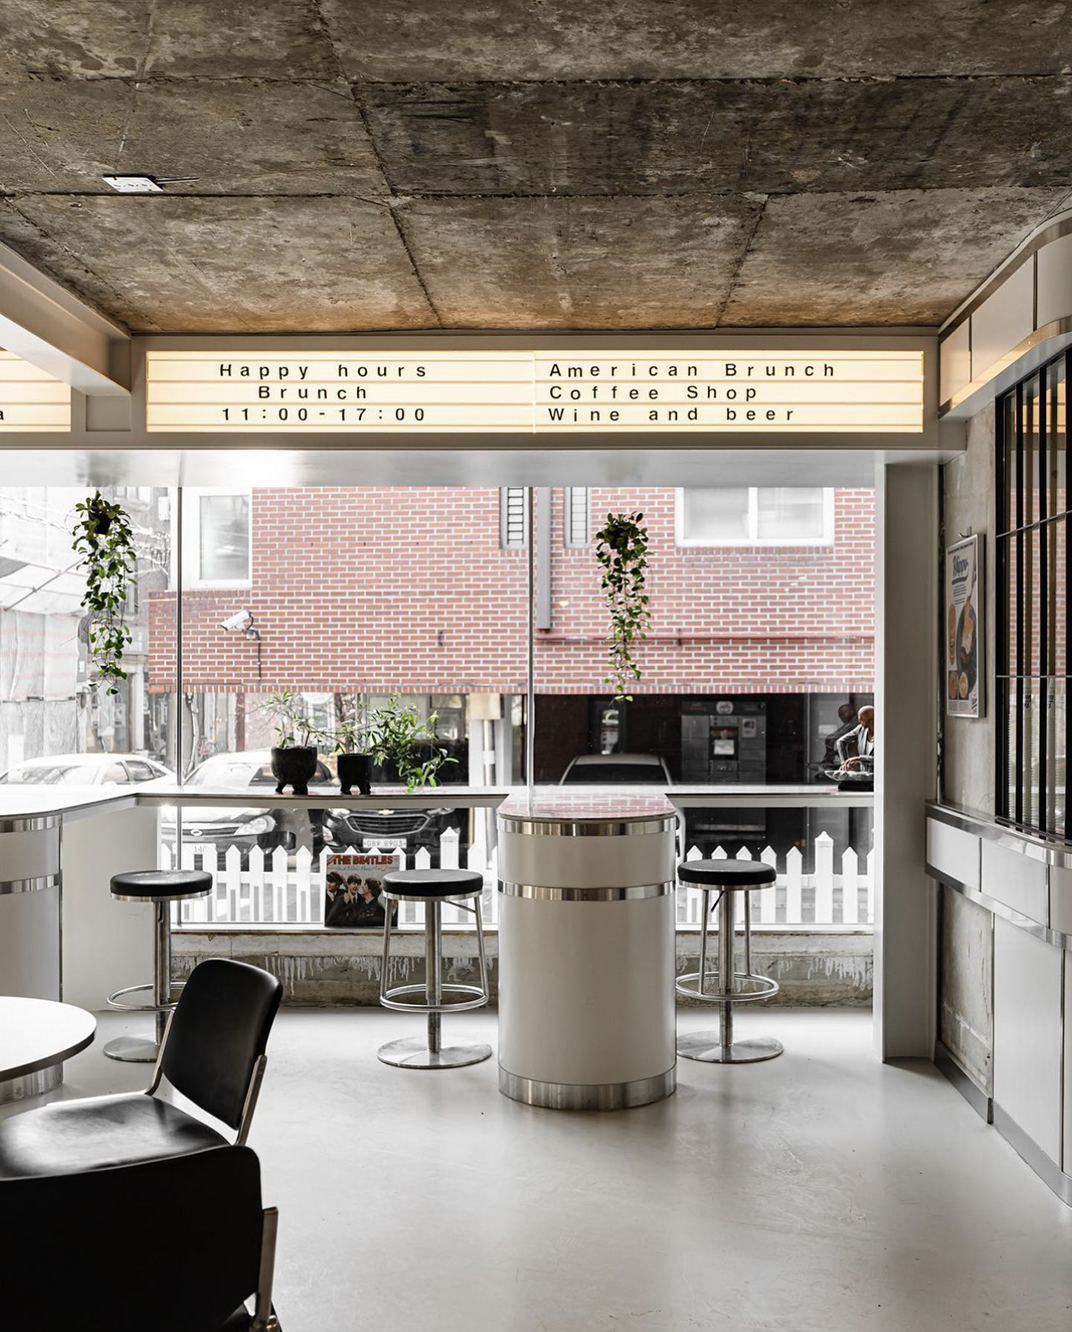 河马咖啡店hippocafeteria 韩国 北京 上海 成都 武汉 杭州 广州 香港 澳门 logo设计 vi设计 空间设计